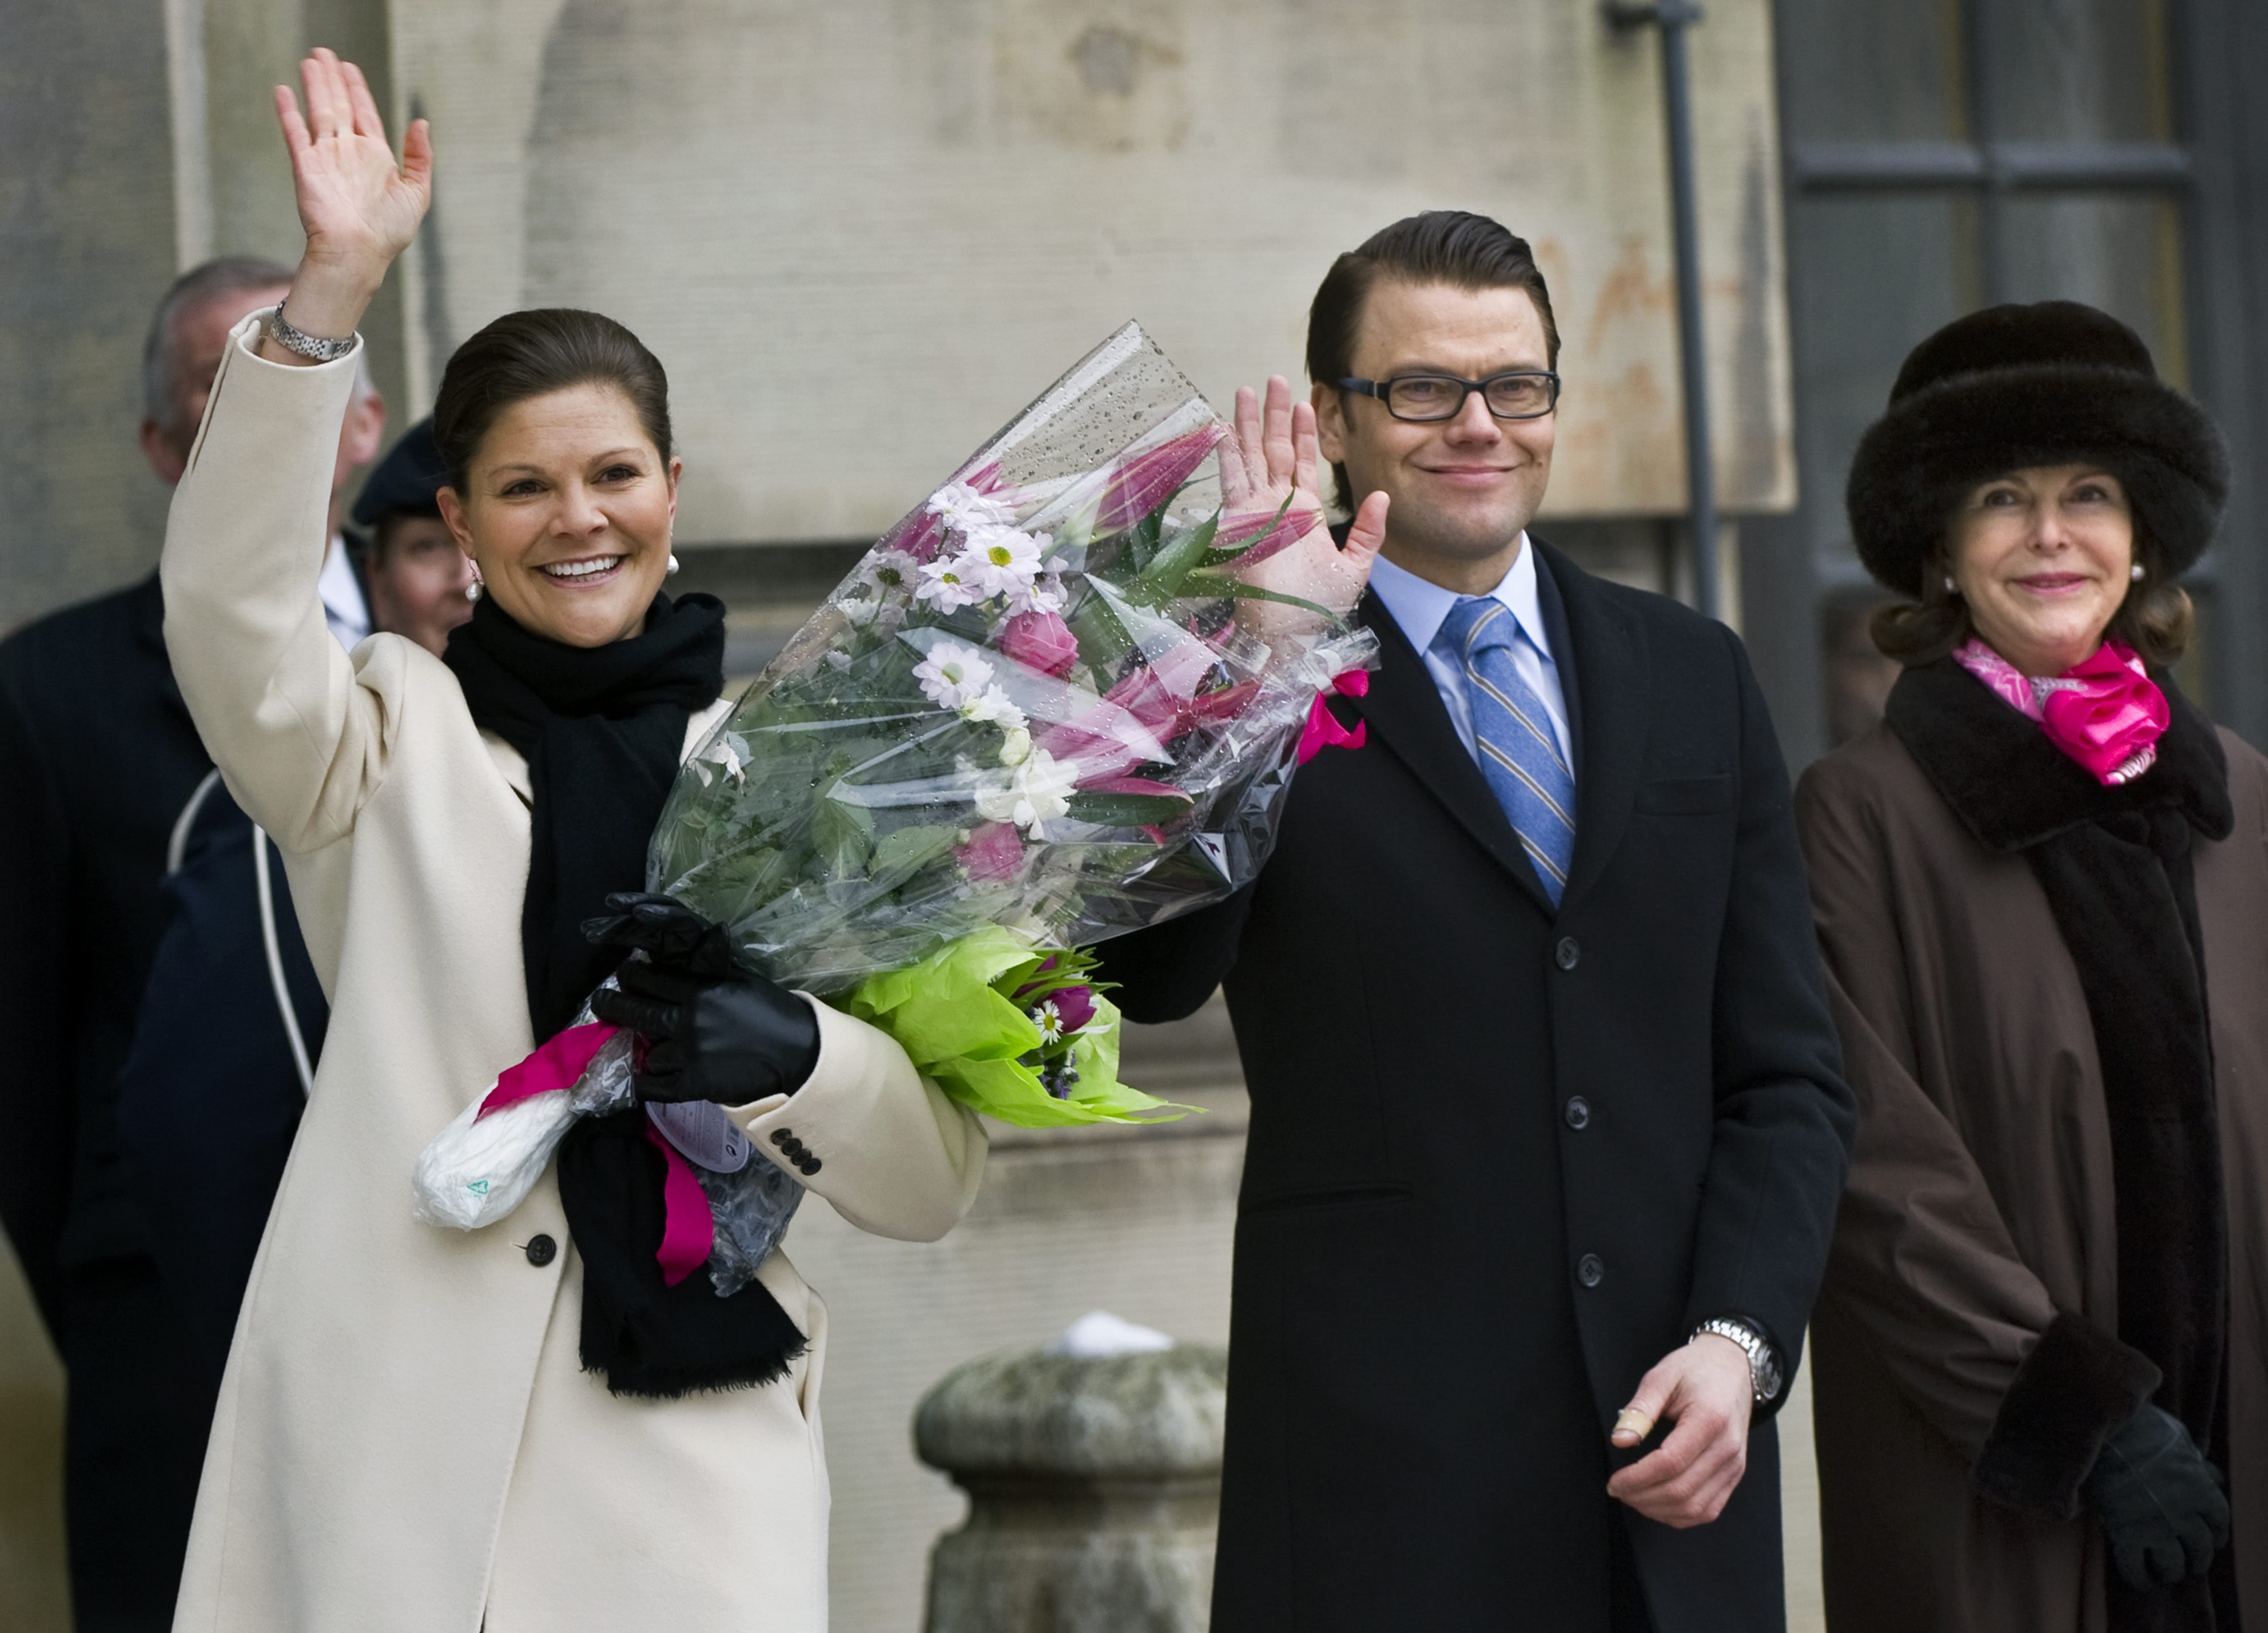 Kungliga bröllop, Monarki, kronprinsessan Victoria, Gudrun Schyman, Riksdagsvalet 2010, Kungligt, Feministiskt initiativ, Republik, Prins Daniel, President